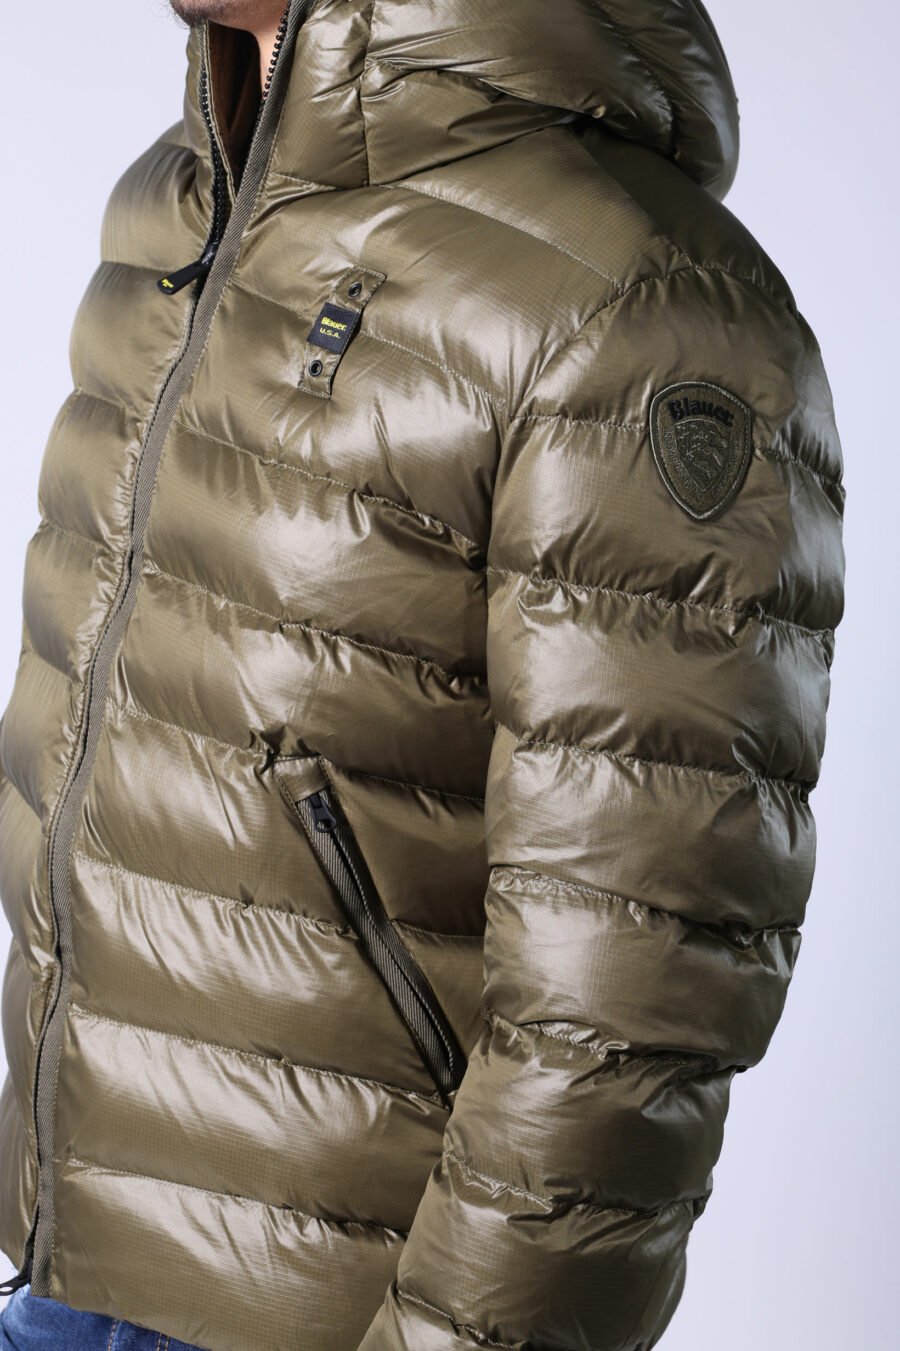 Veste à capuche vert militaire avec lignes droites et intérieur beige - Untitled Catalog 05579